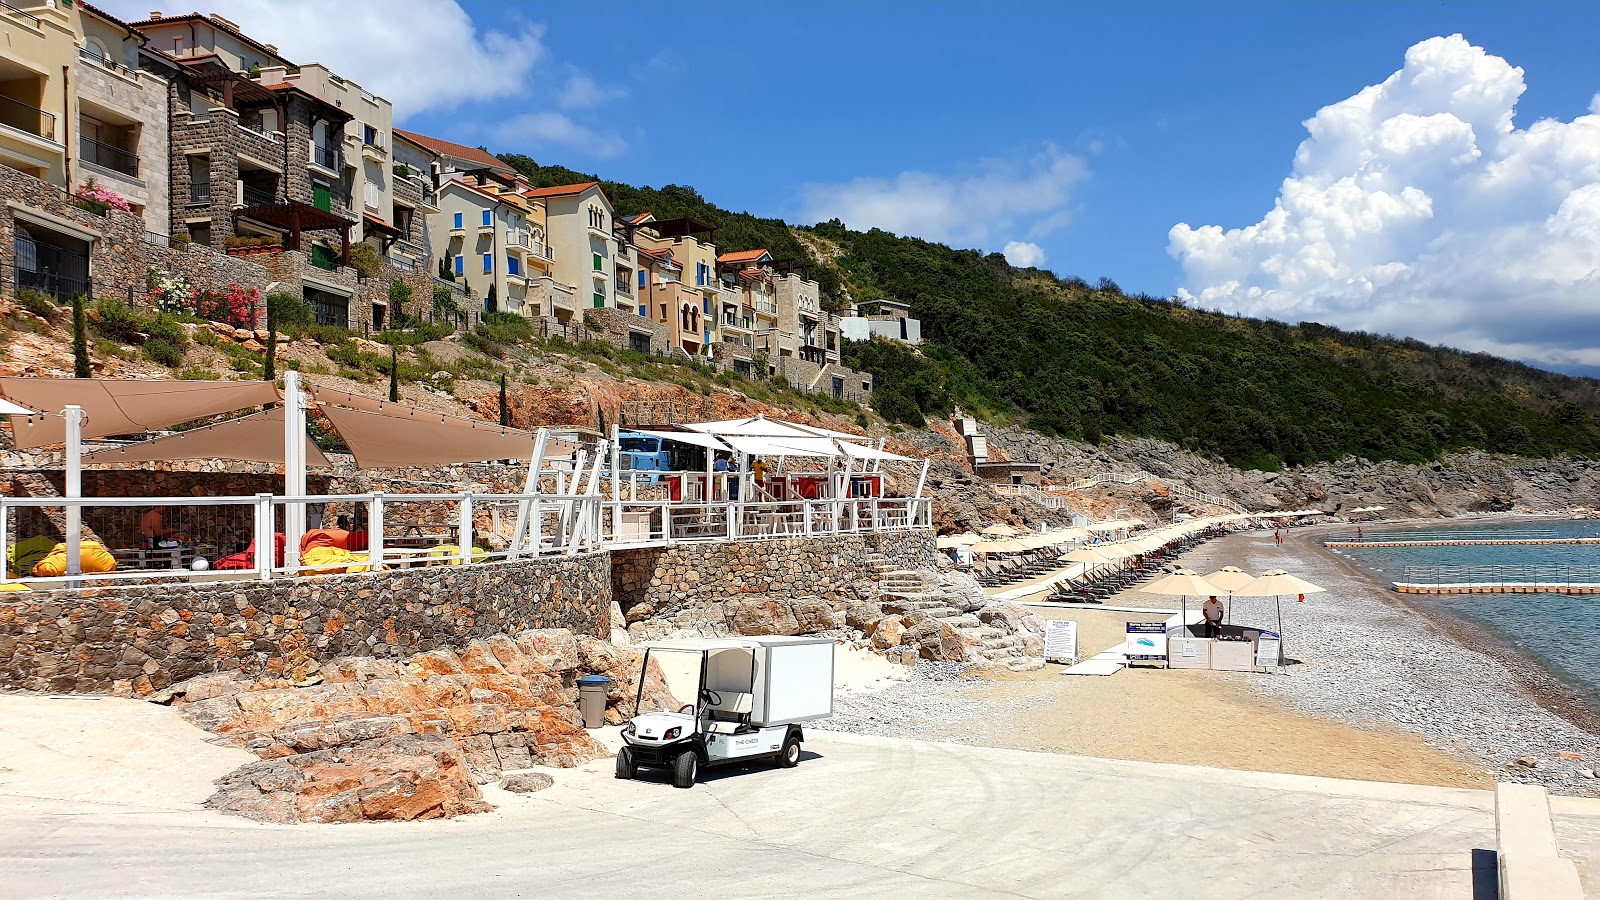 Zdjęcie Lustica beach z poziomem czystości wysoki